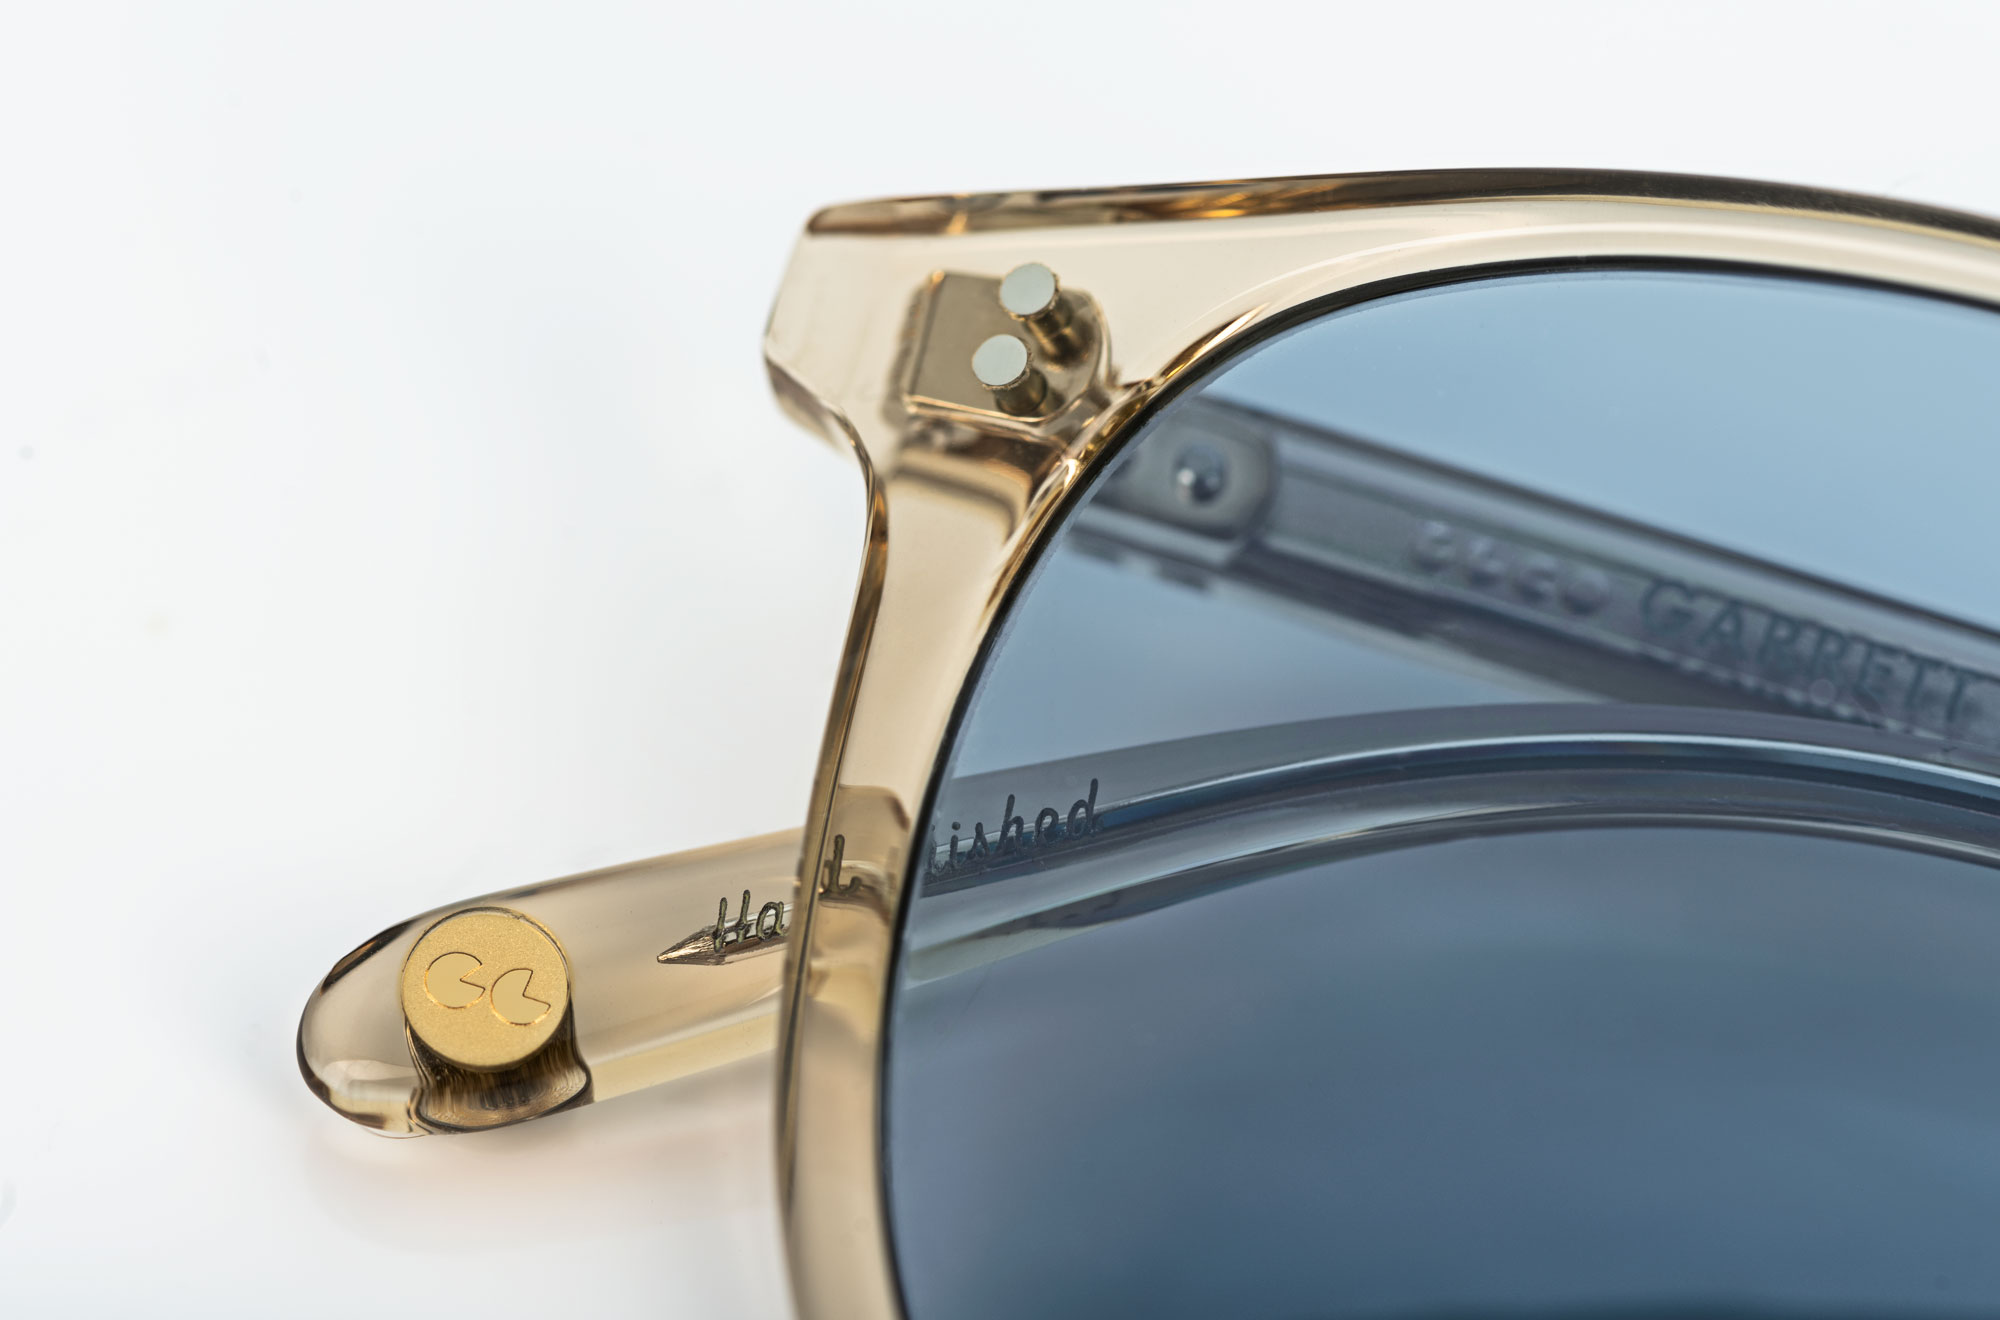 Garrett Leight – Kinney – Champanger blue smoke – Sonnenbrille - handfinished – Vintage – KITSCHENBERG Brillen